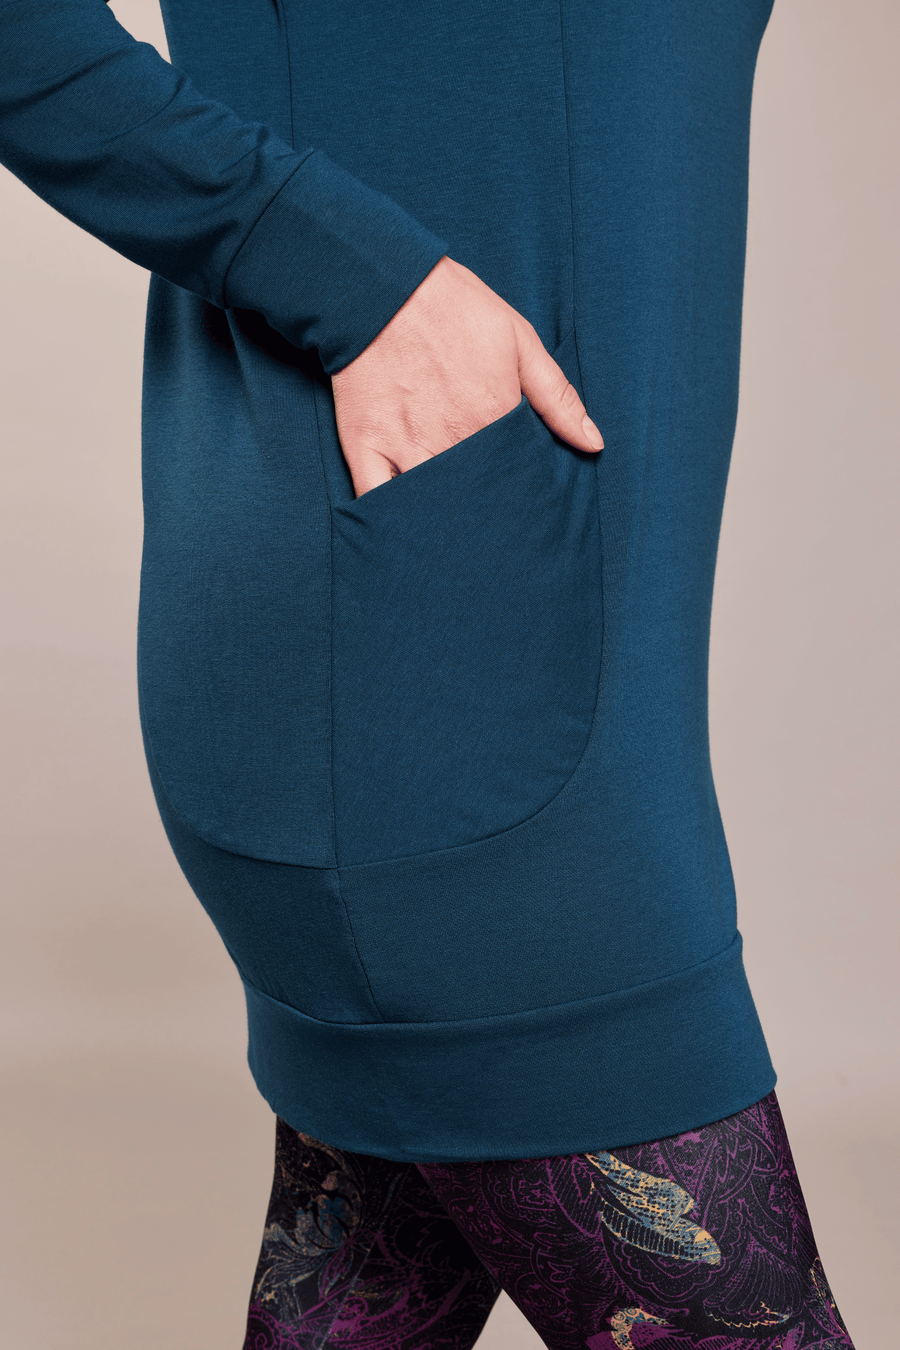 Tunique en molleton émeraude à manches longues avec poches et capuchon fait au Québec, Canada